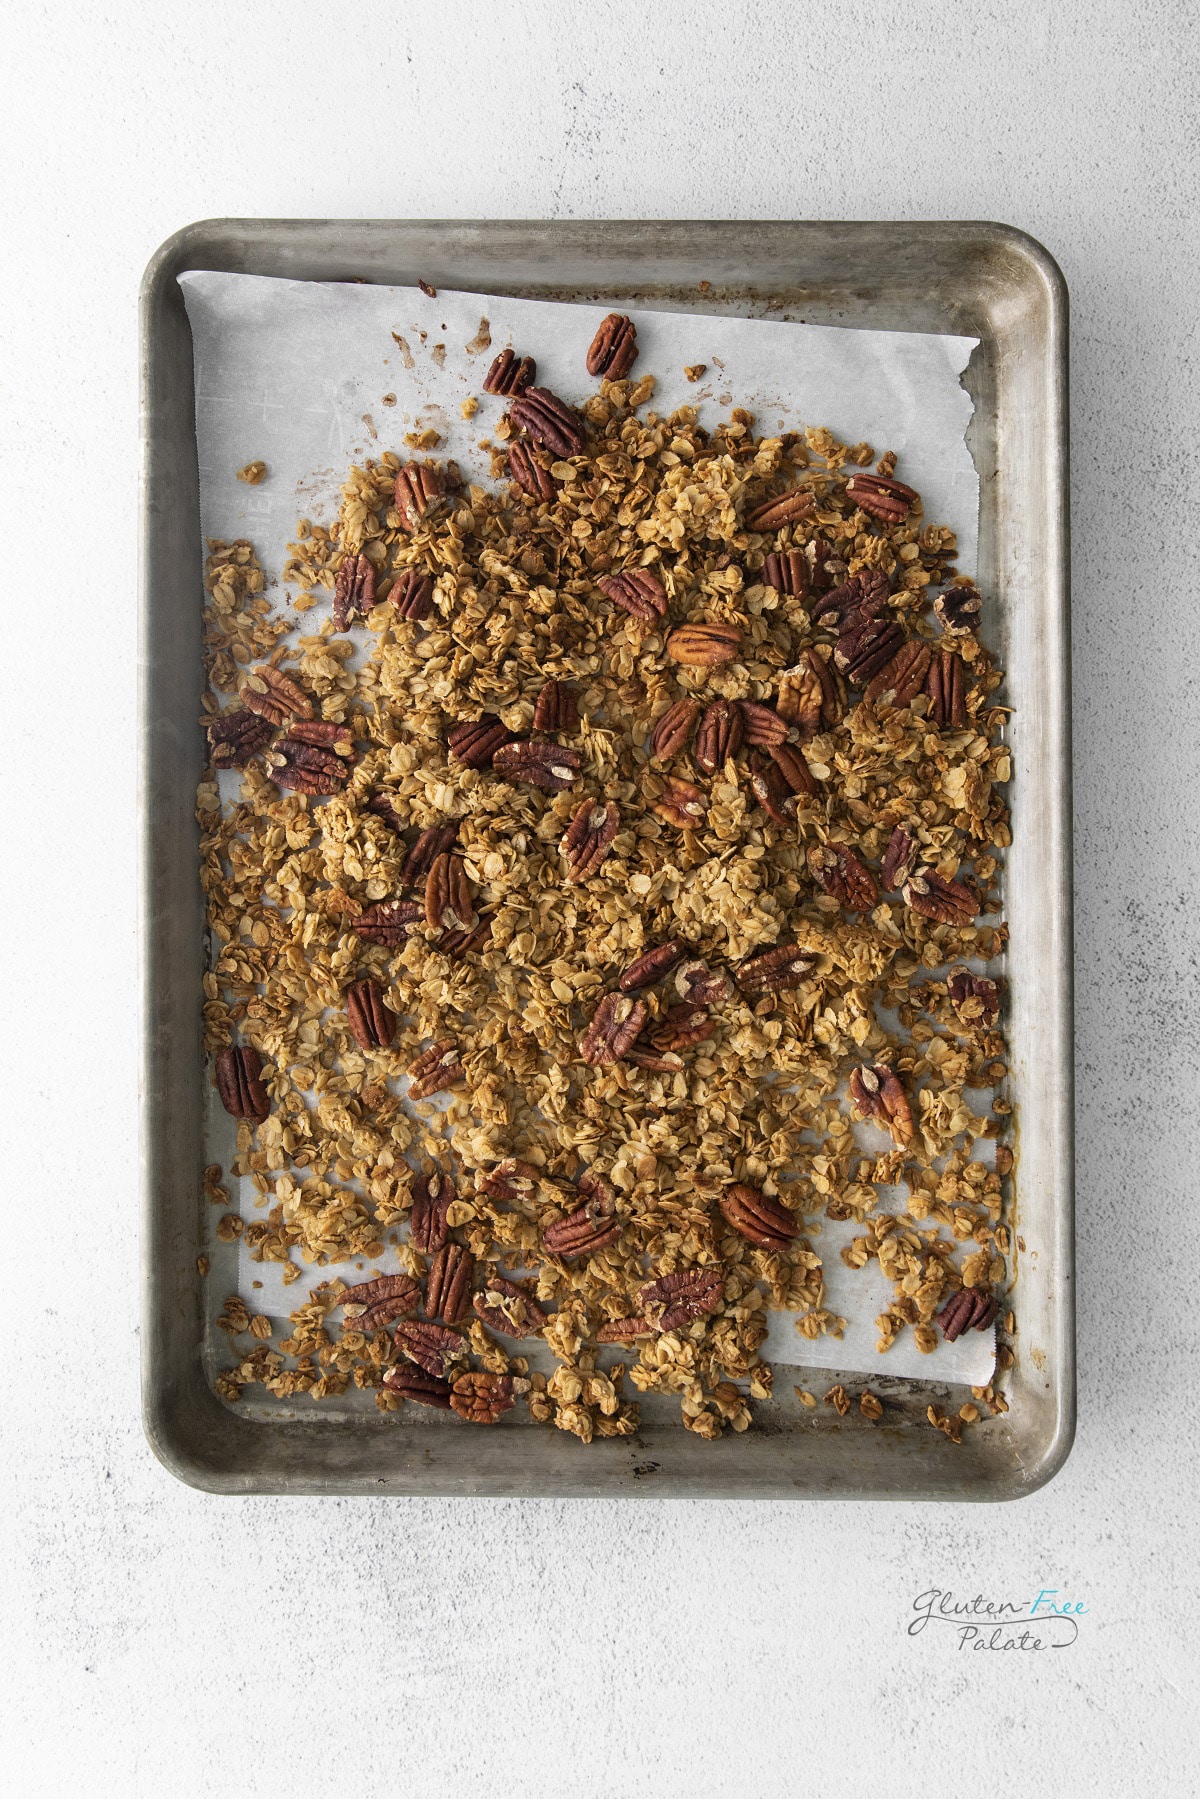 gluten-free vegan granola on a baking pan.